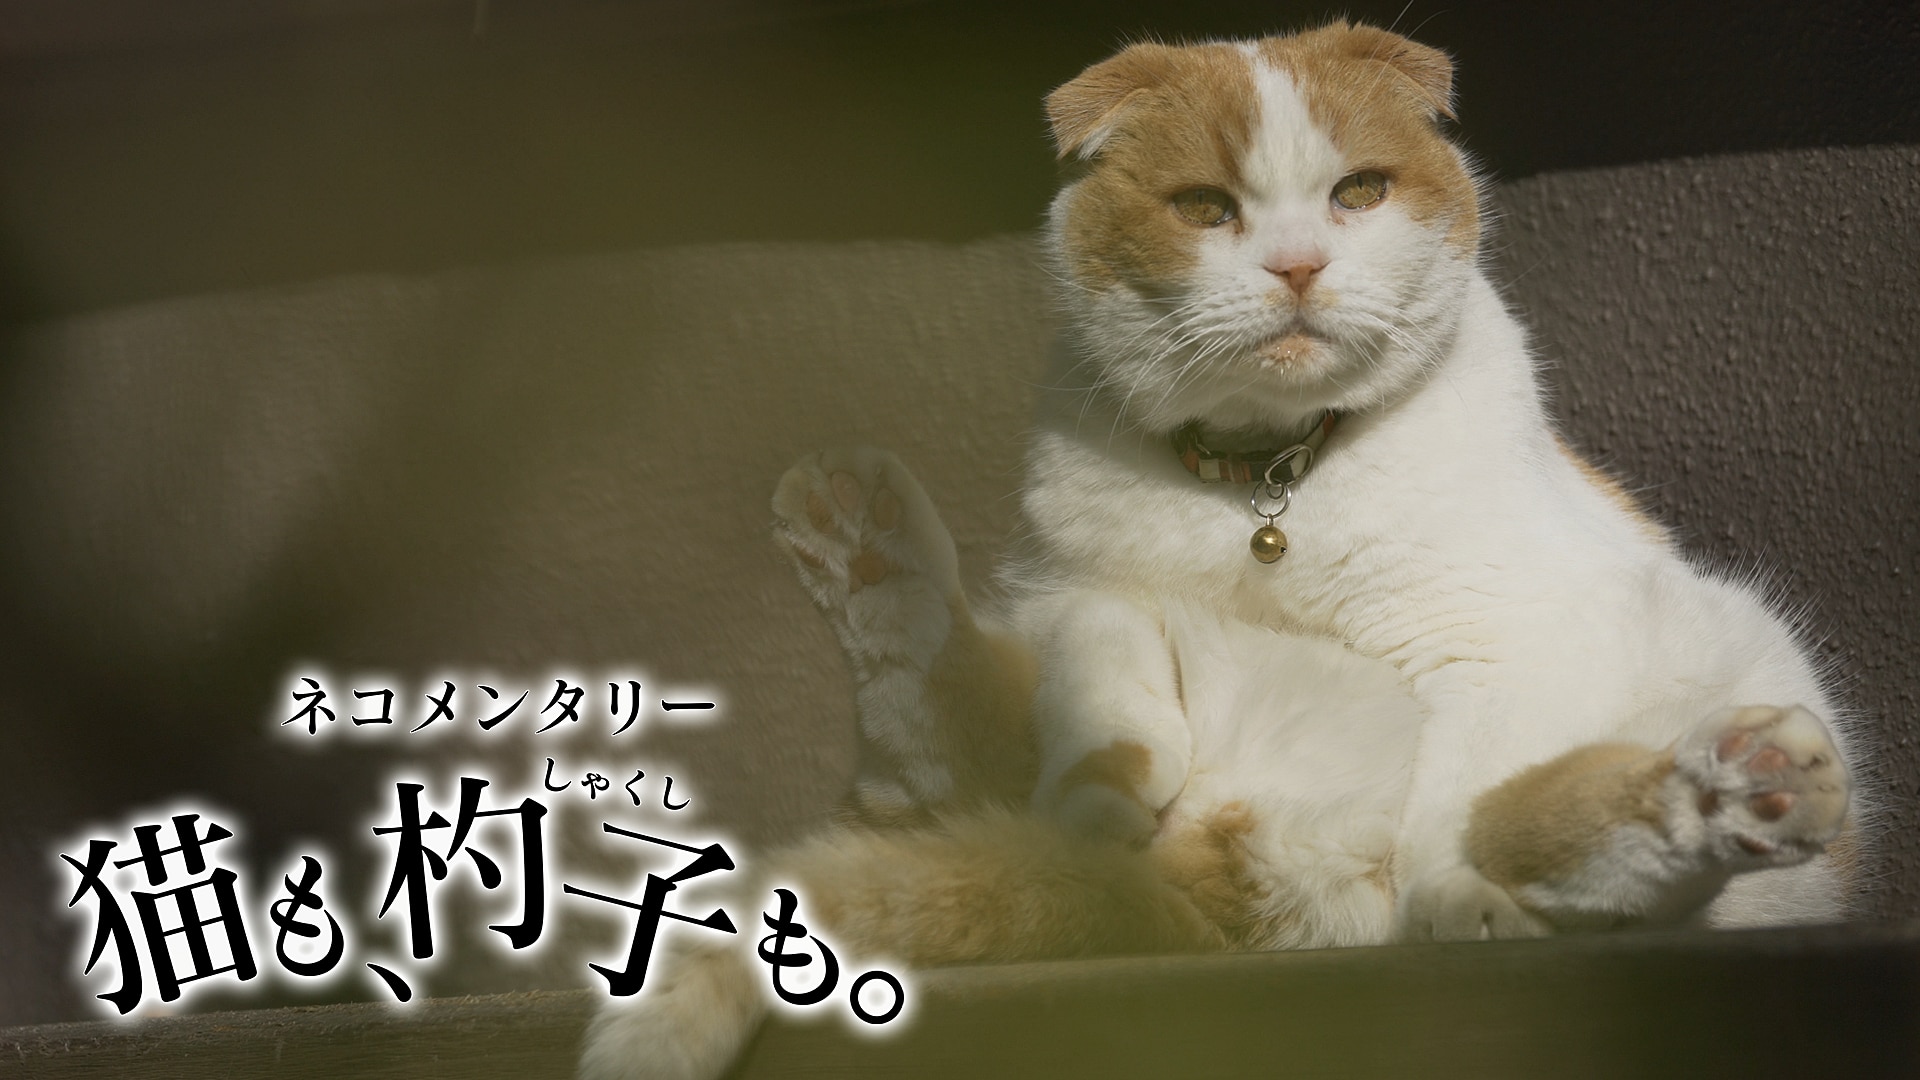 【ゲイ】ねこ 猫好きニャンニャン35匹目【ﾜｯﾁｮｲ無】 YouTube動画>19本 ->画像>205枚 